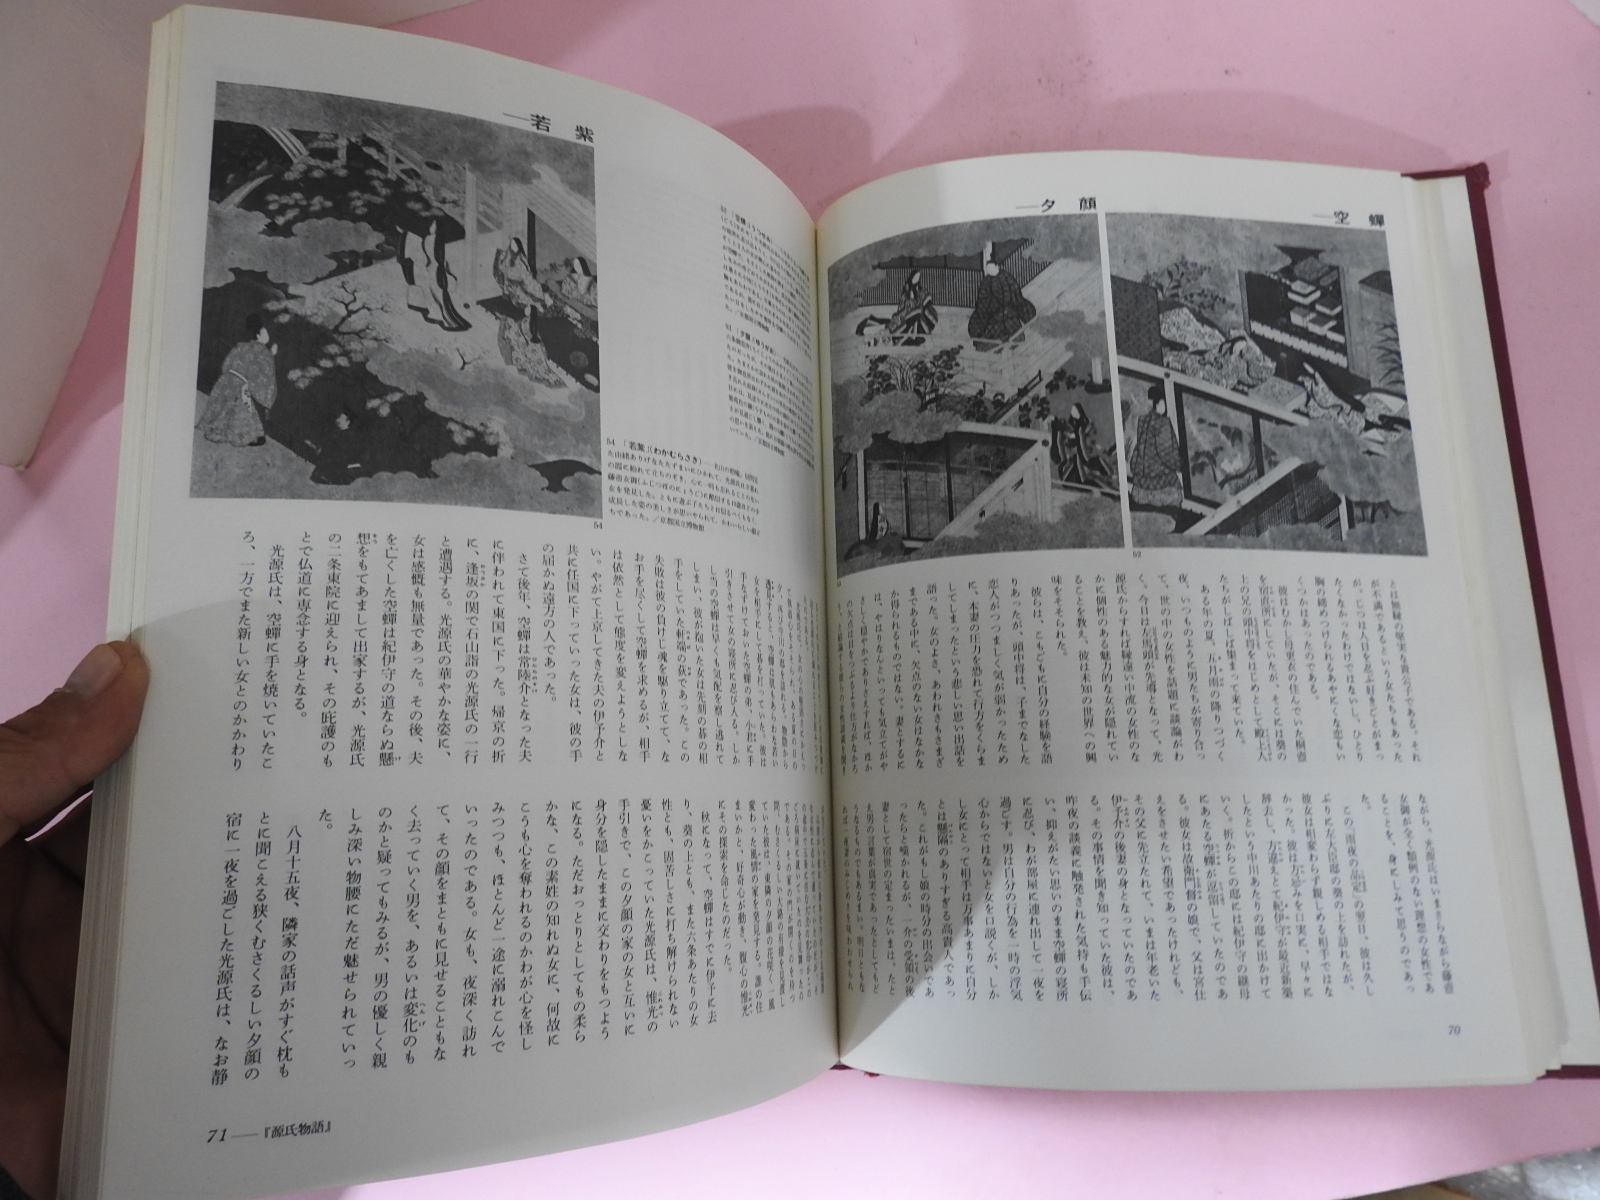 1978년 일본의 고전 원씨물어(源氏物語)